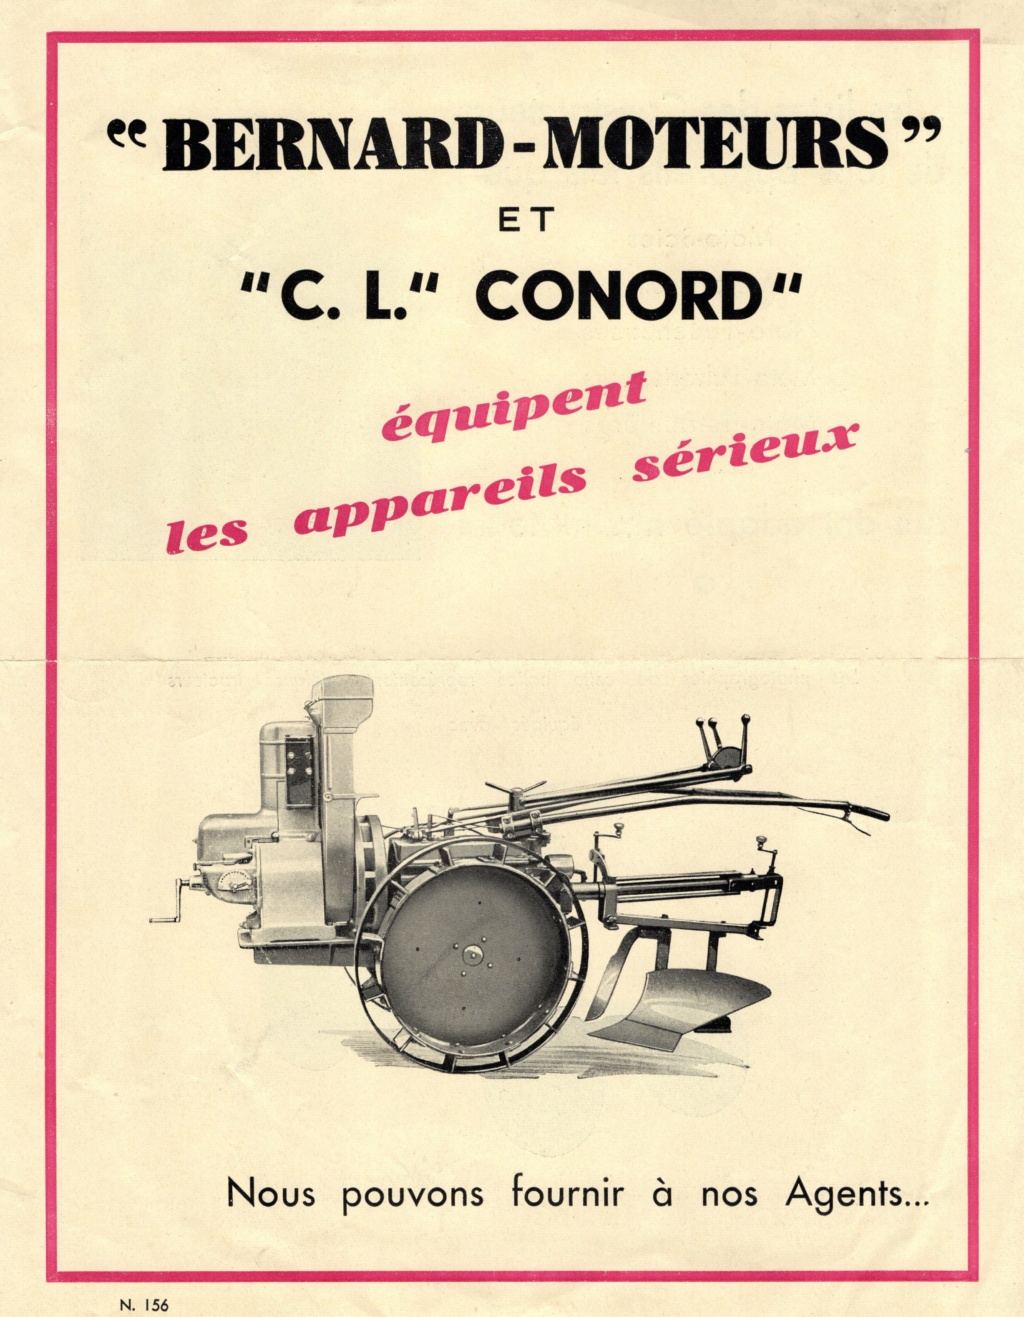 Avis de recherche de motorisation BERNARD MOTEURS - Page 27 Img20231